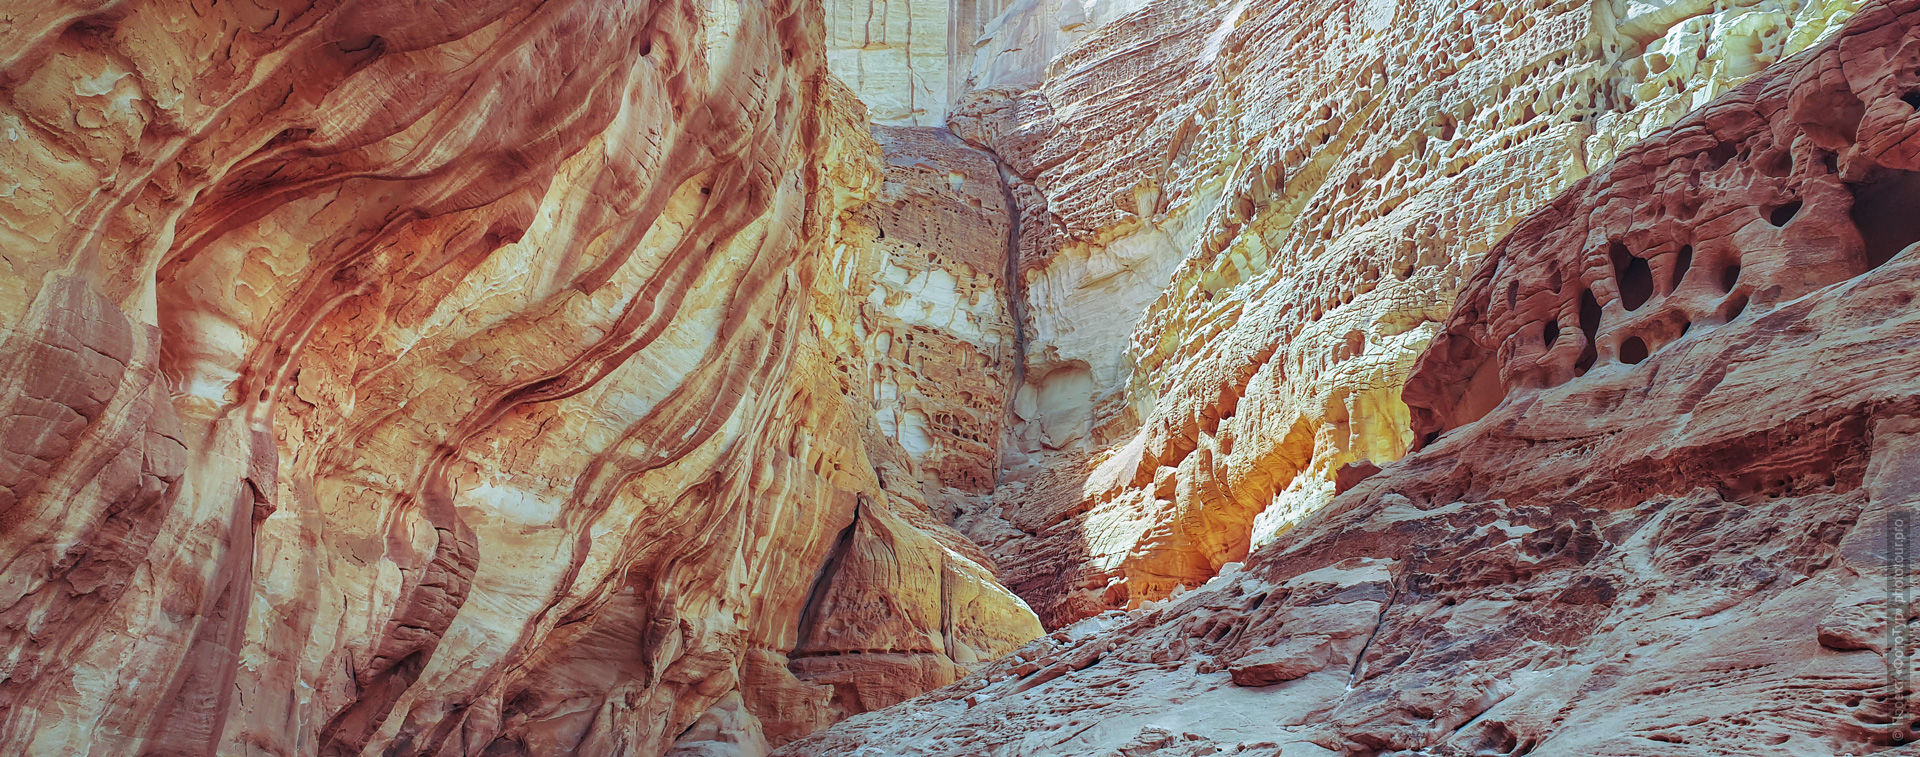 Цветная стена в пустыне Дахаба, приключенческий фототур/тур пустыни и горы Синая, Египет, 27 ноября - 8 декабря 2021 года.